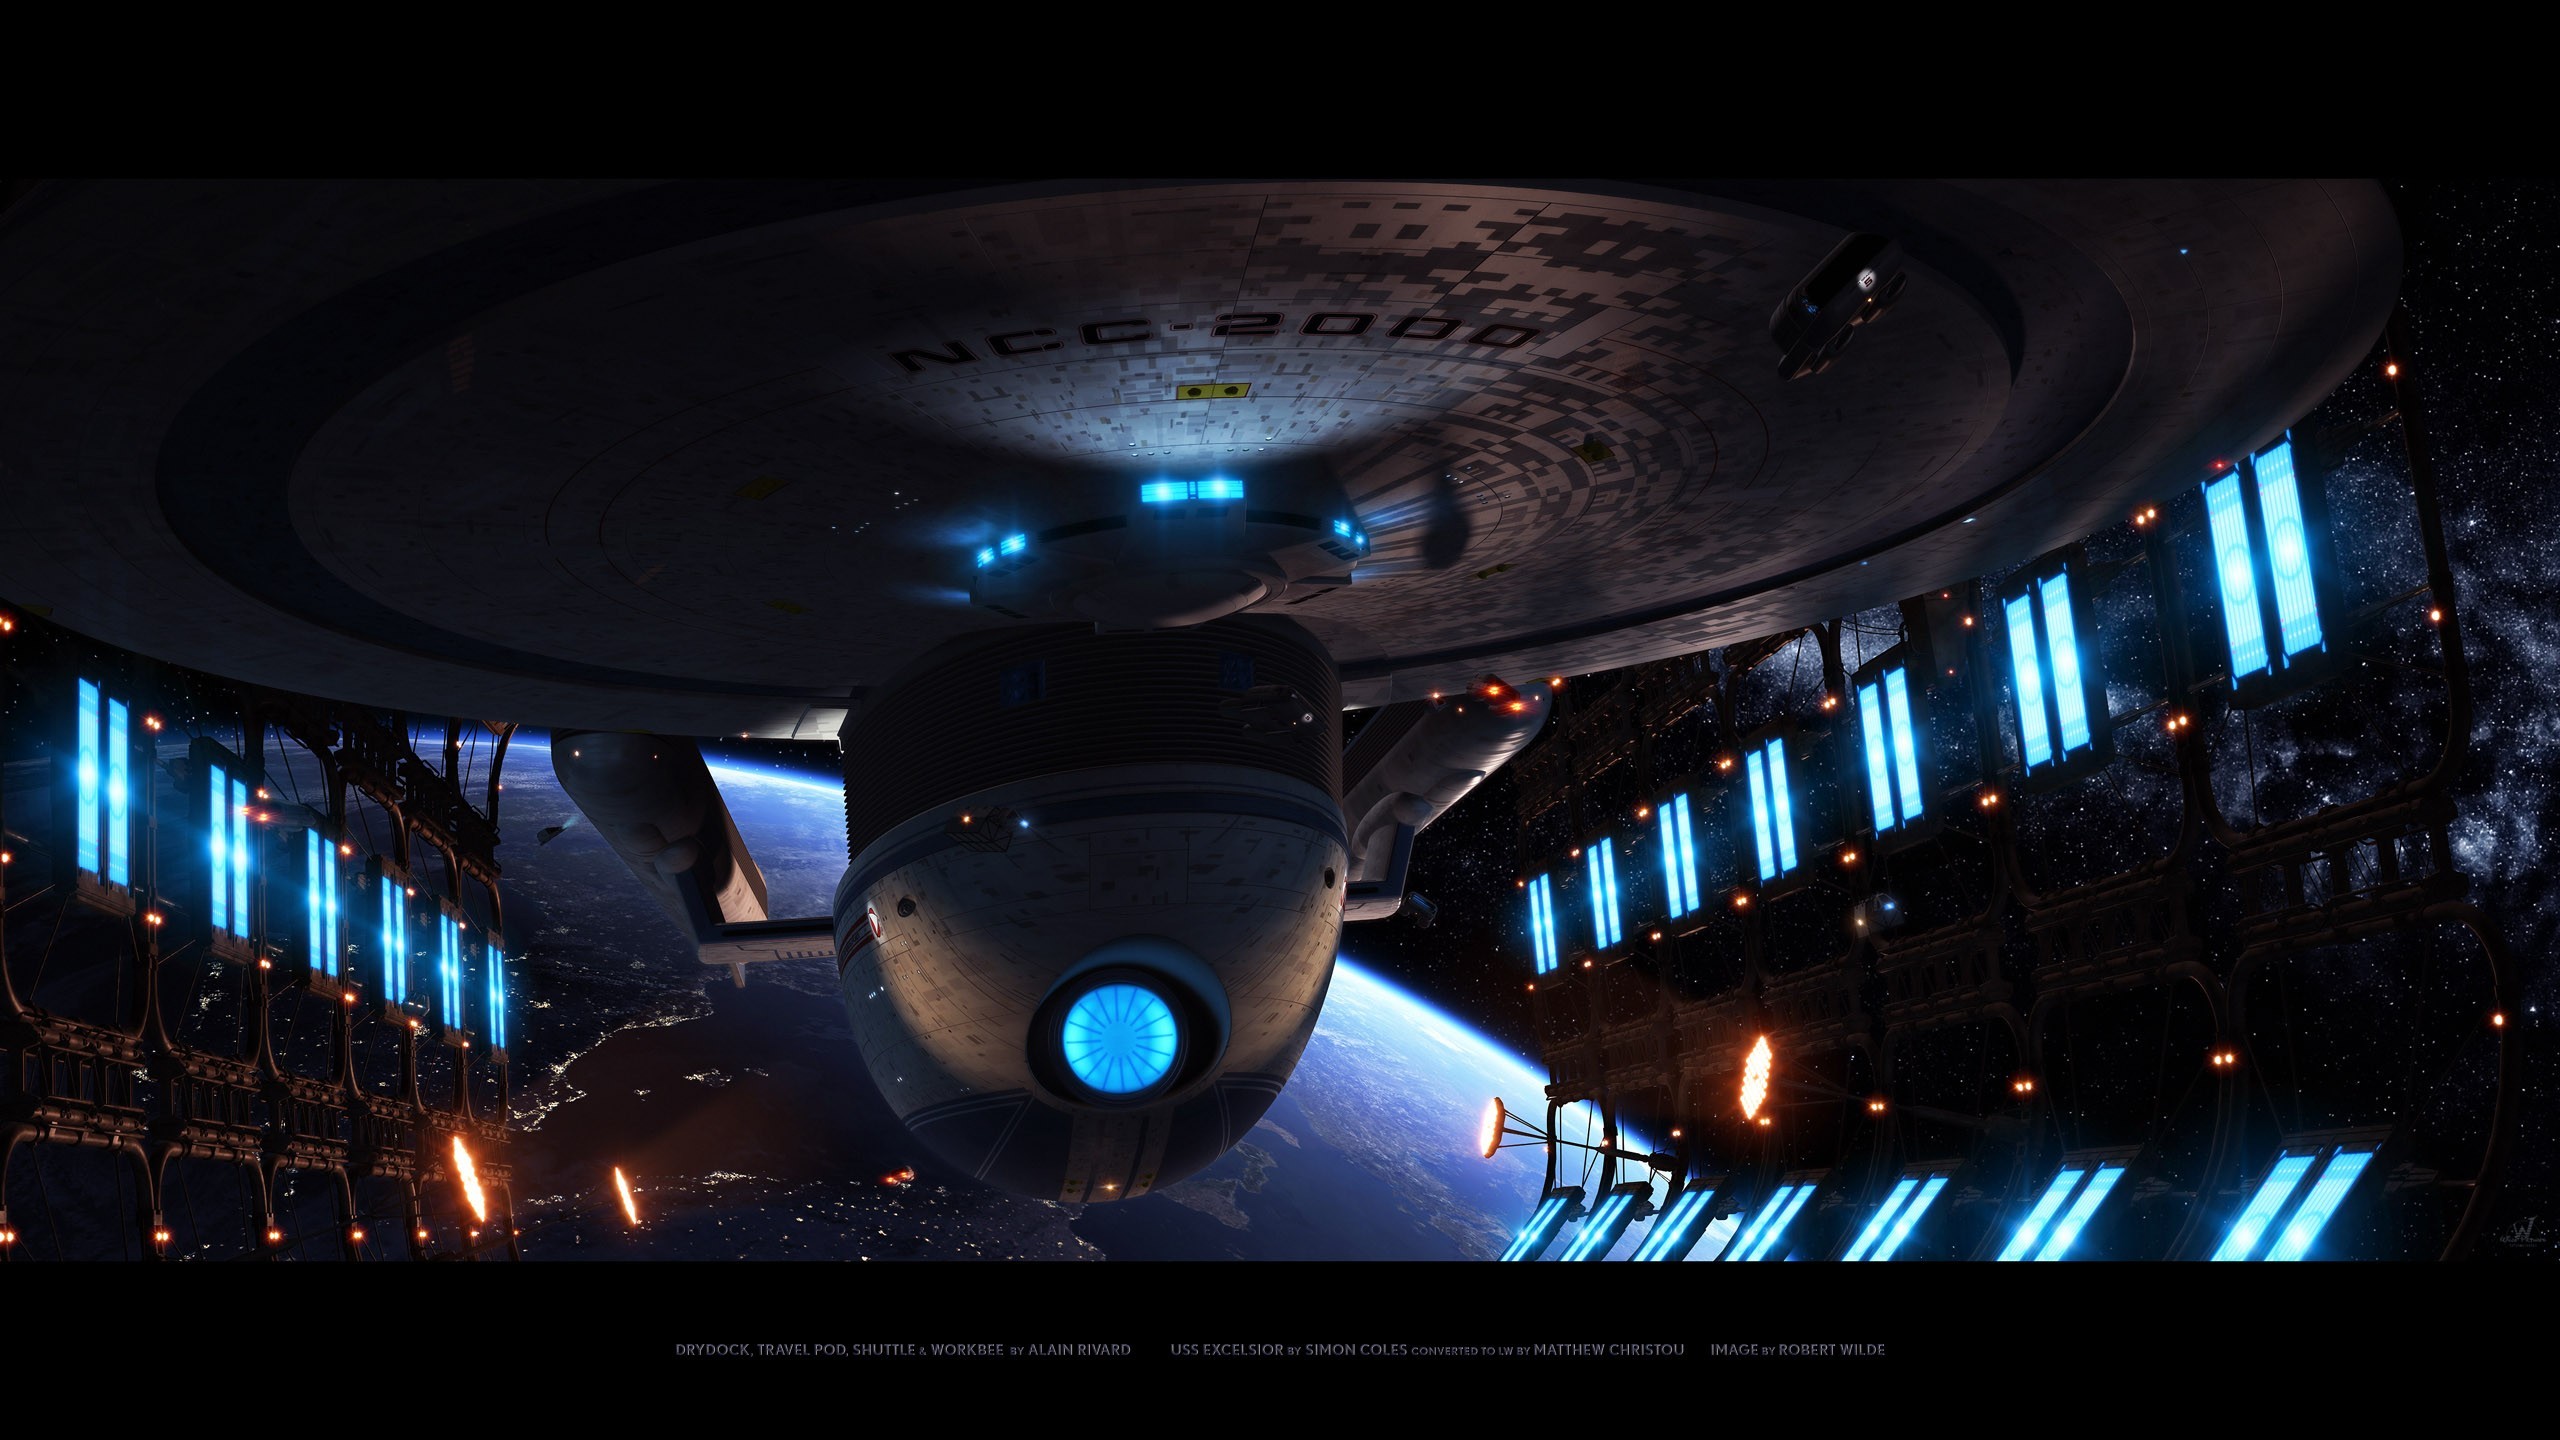 Star Trek Wallpaper Star, Trek, Enterprise, Uss, Excelsior